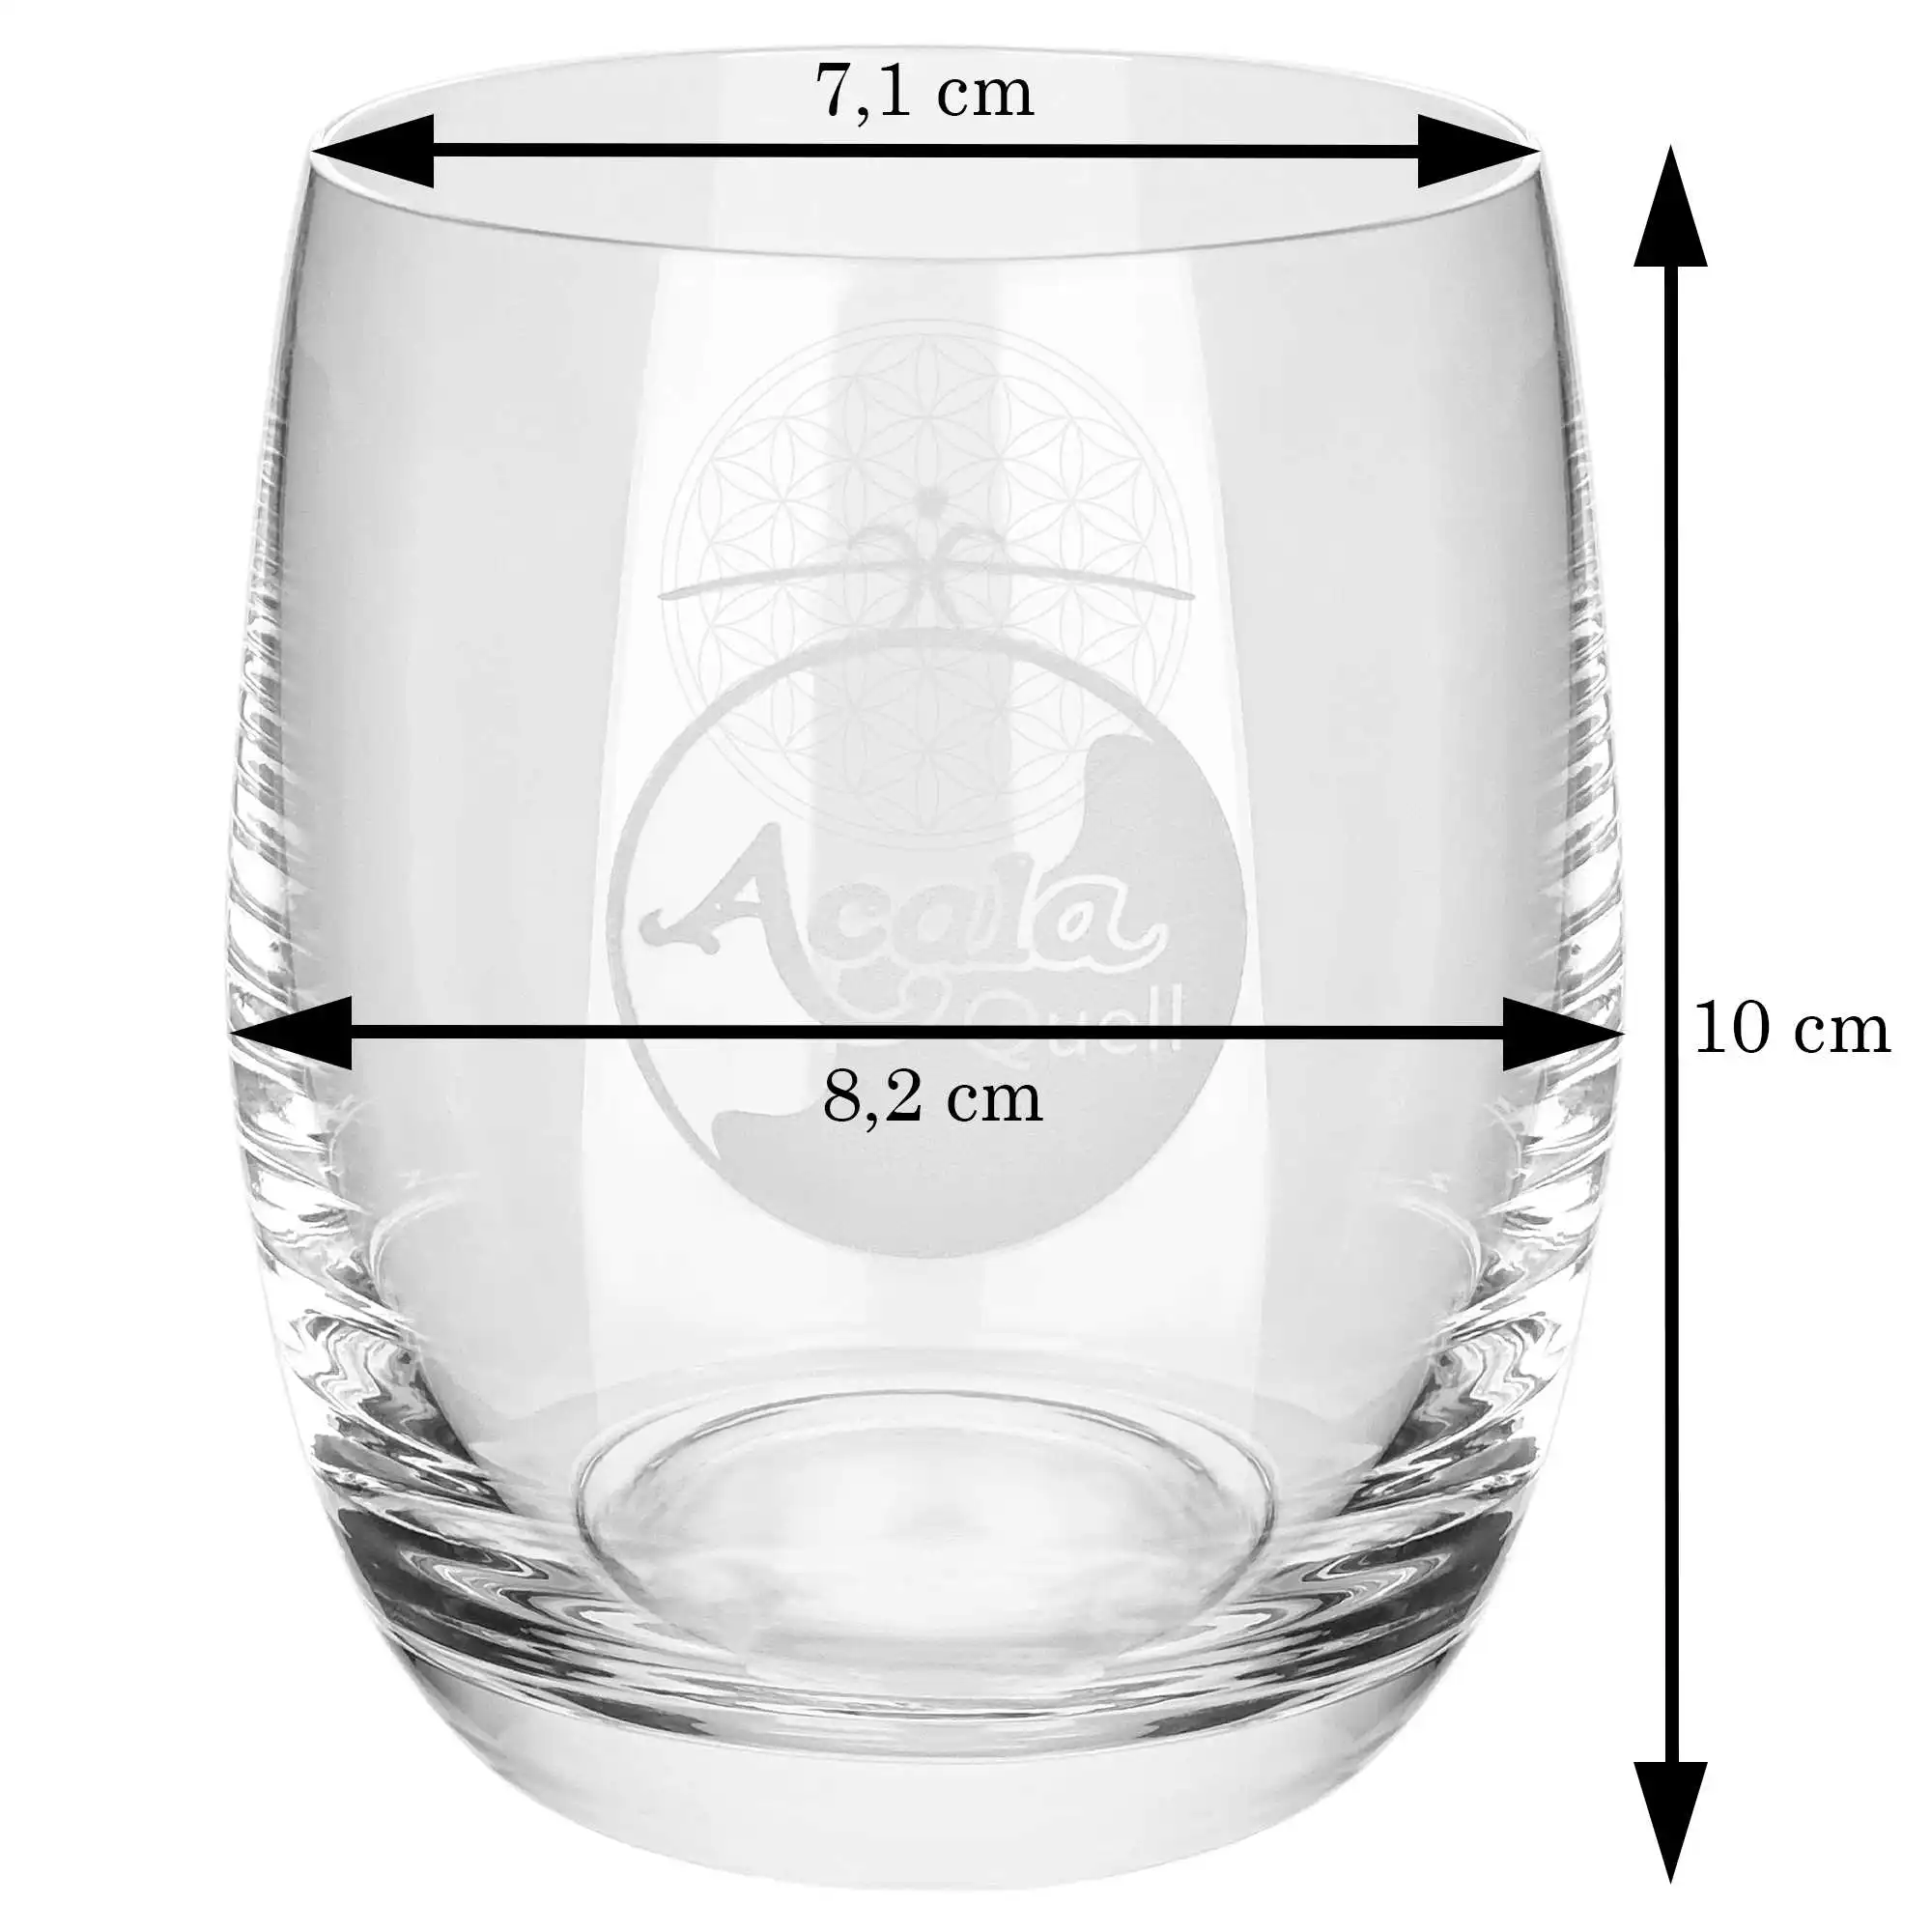 Zu sehen ist ein Arlando Trinkglas von Acala in Großaufnahme vor weißem Hintergrund. An dem Glas sind schwarze Pfeile an denen Maße stehen. 